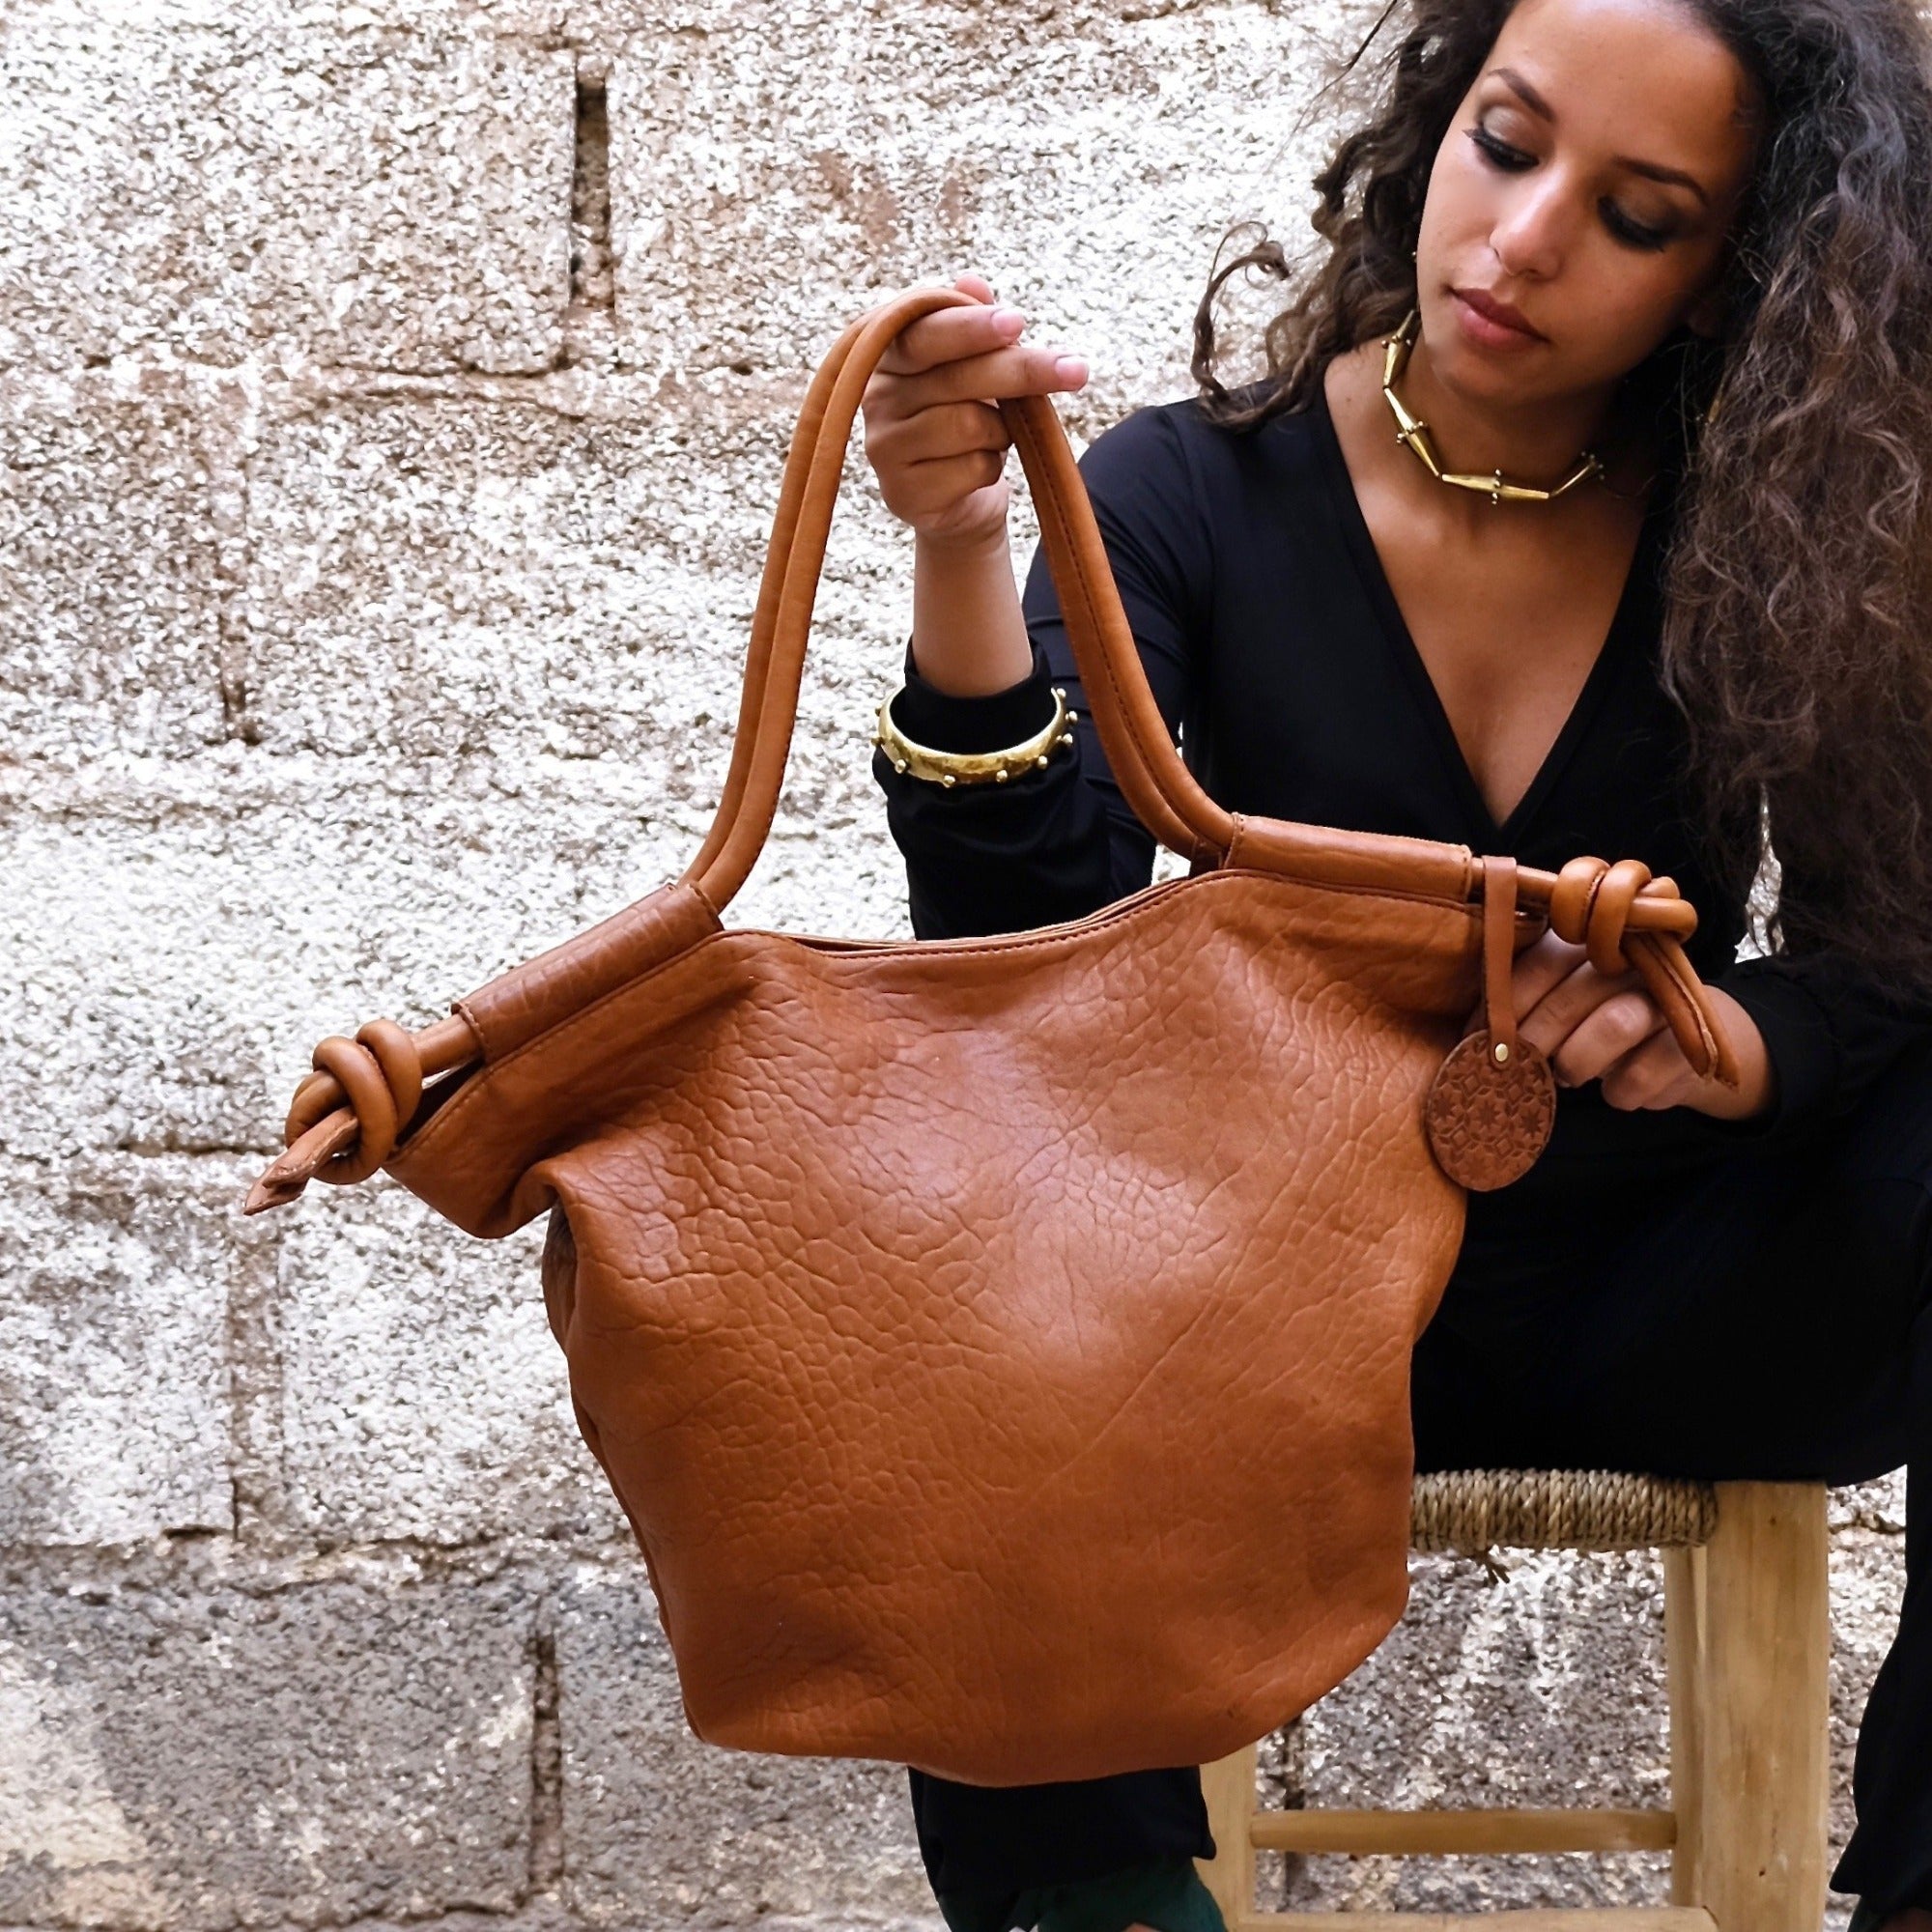 Women's Designer Handbags, Purses & Handbags